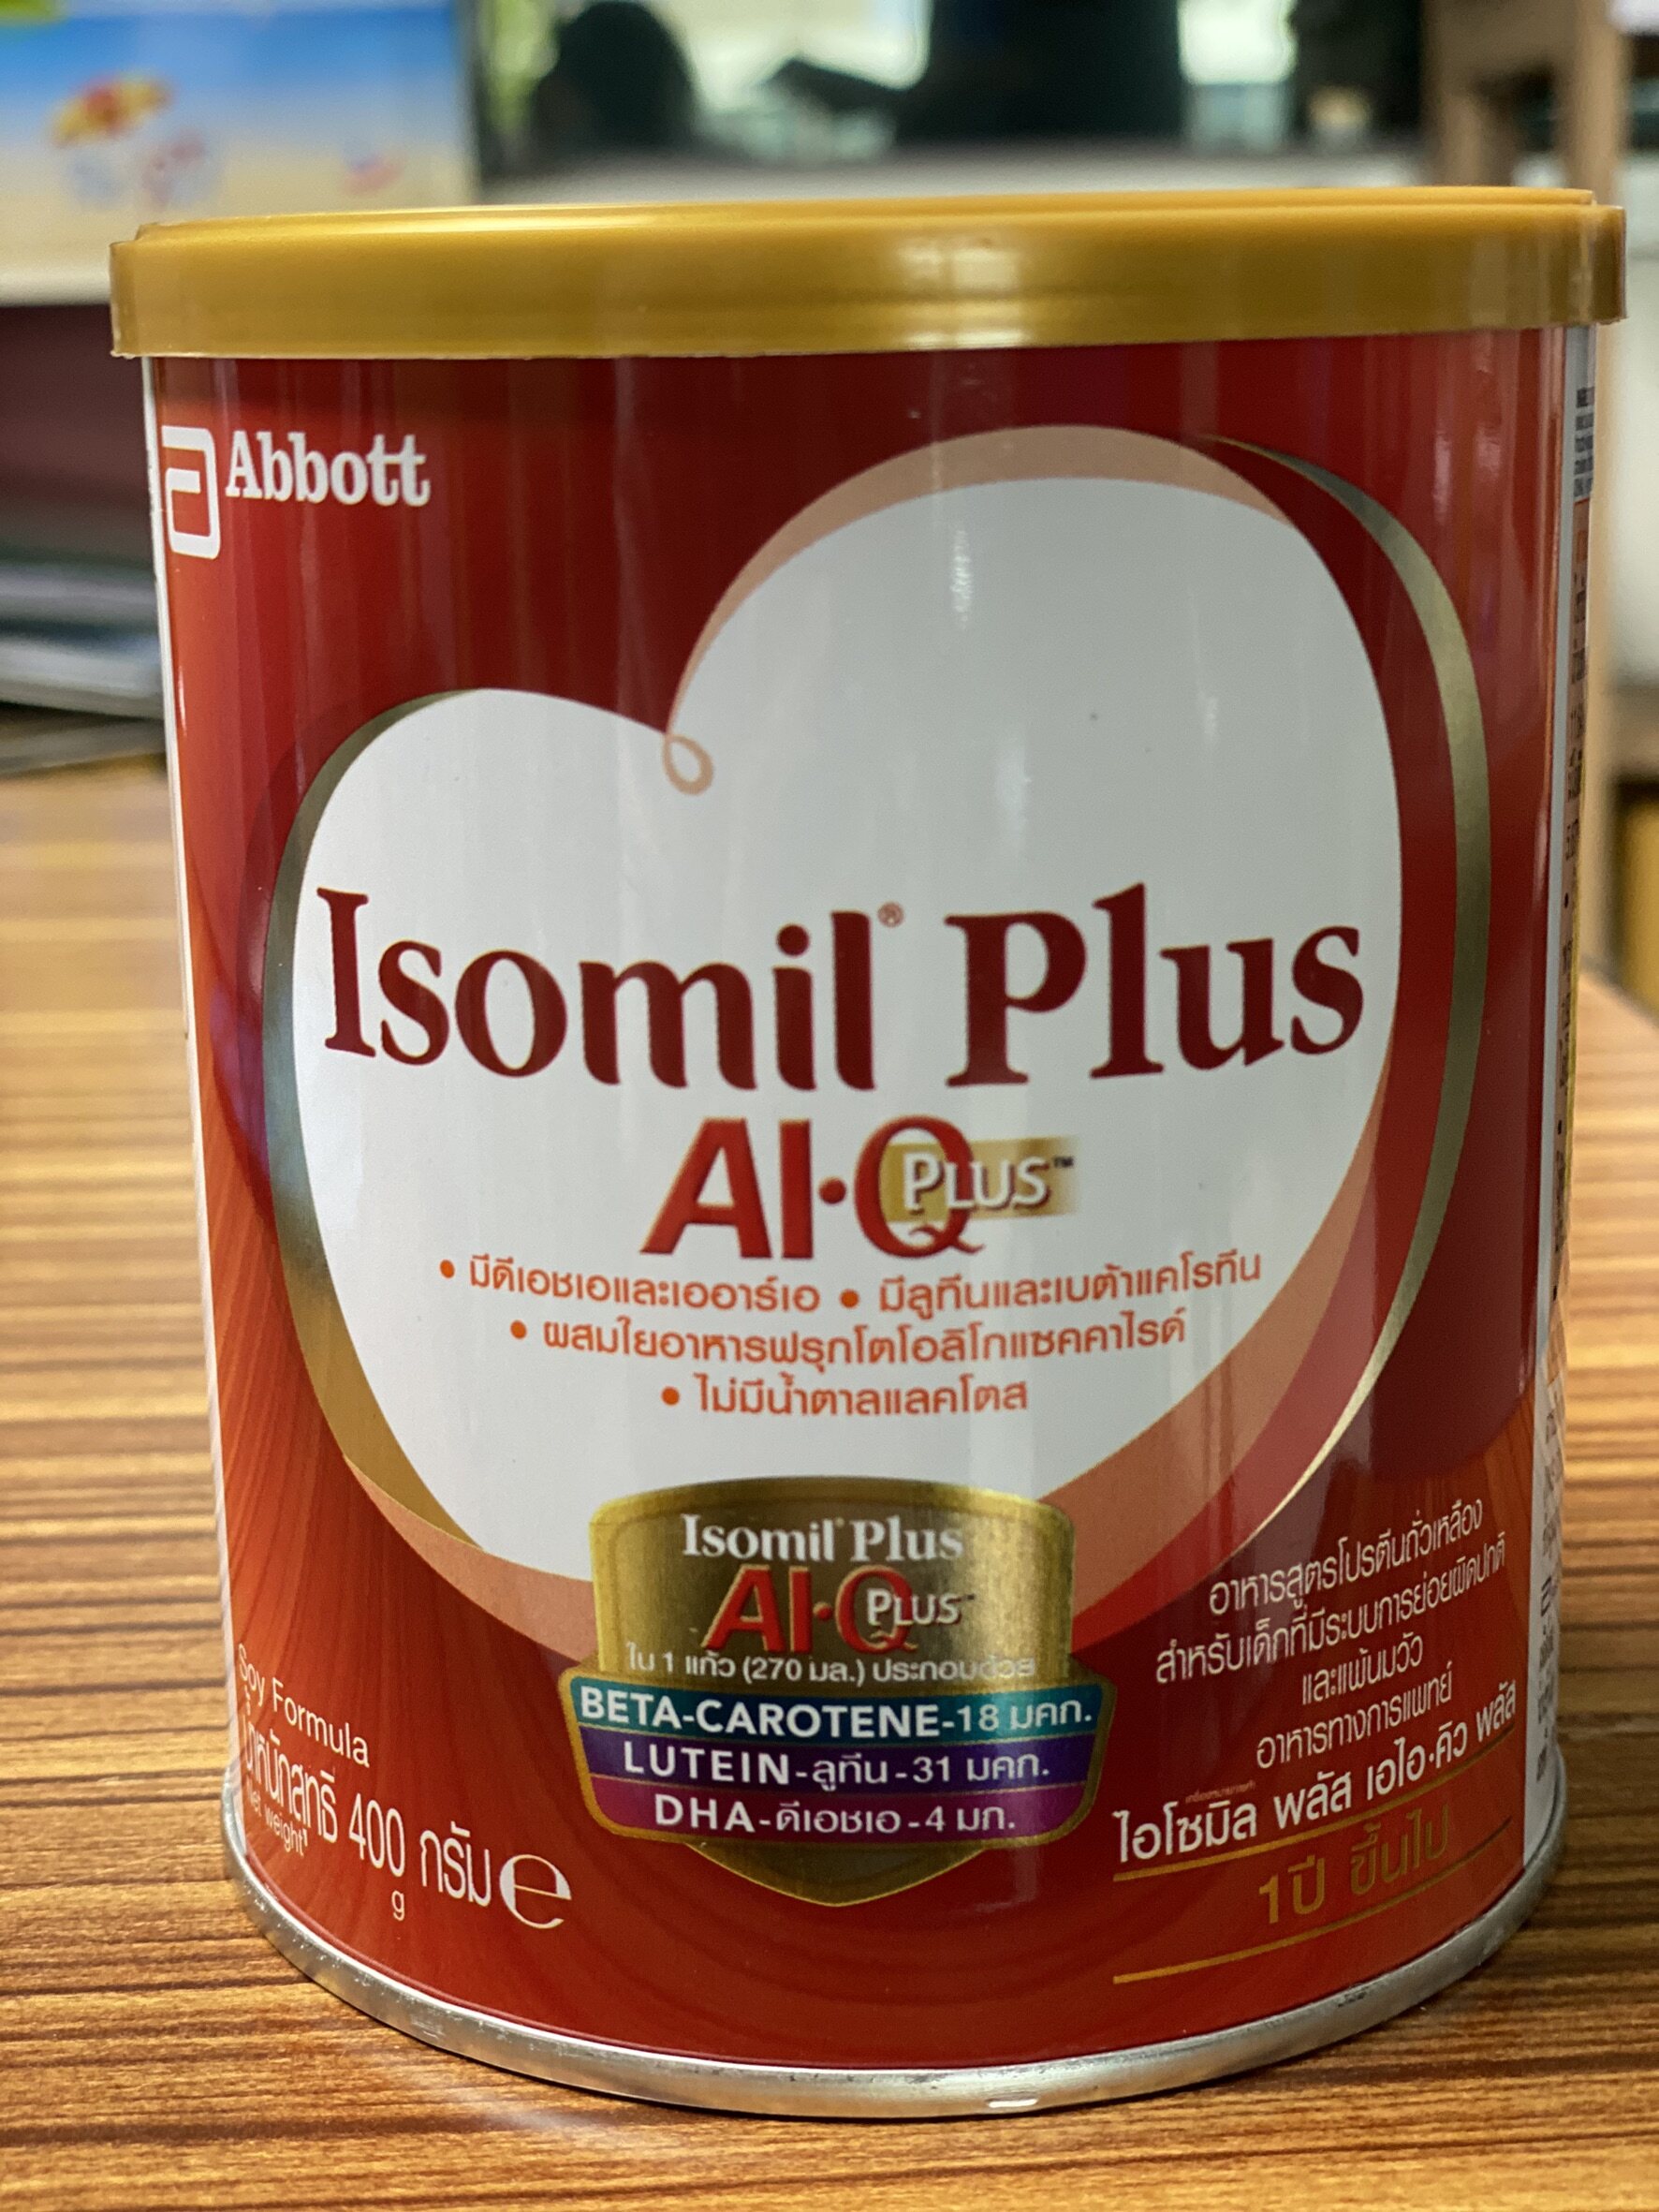 Isomill Plus AI-Q Plus 400 g 1 ปีขึ้นไป ไอโซมิล พลัส เอไอคิว พลัส 400 กรัม